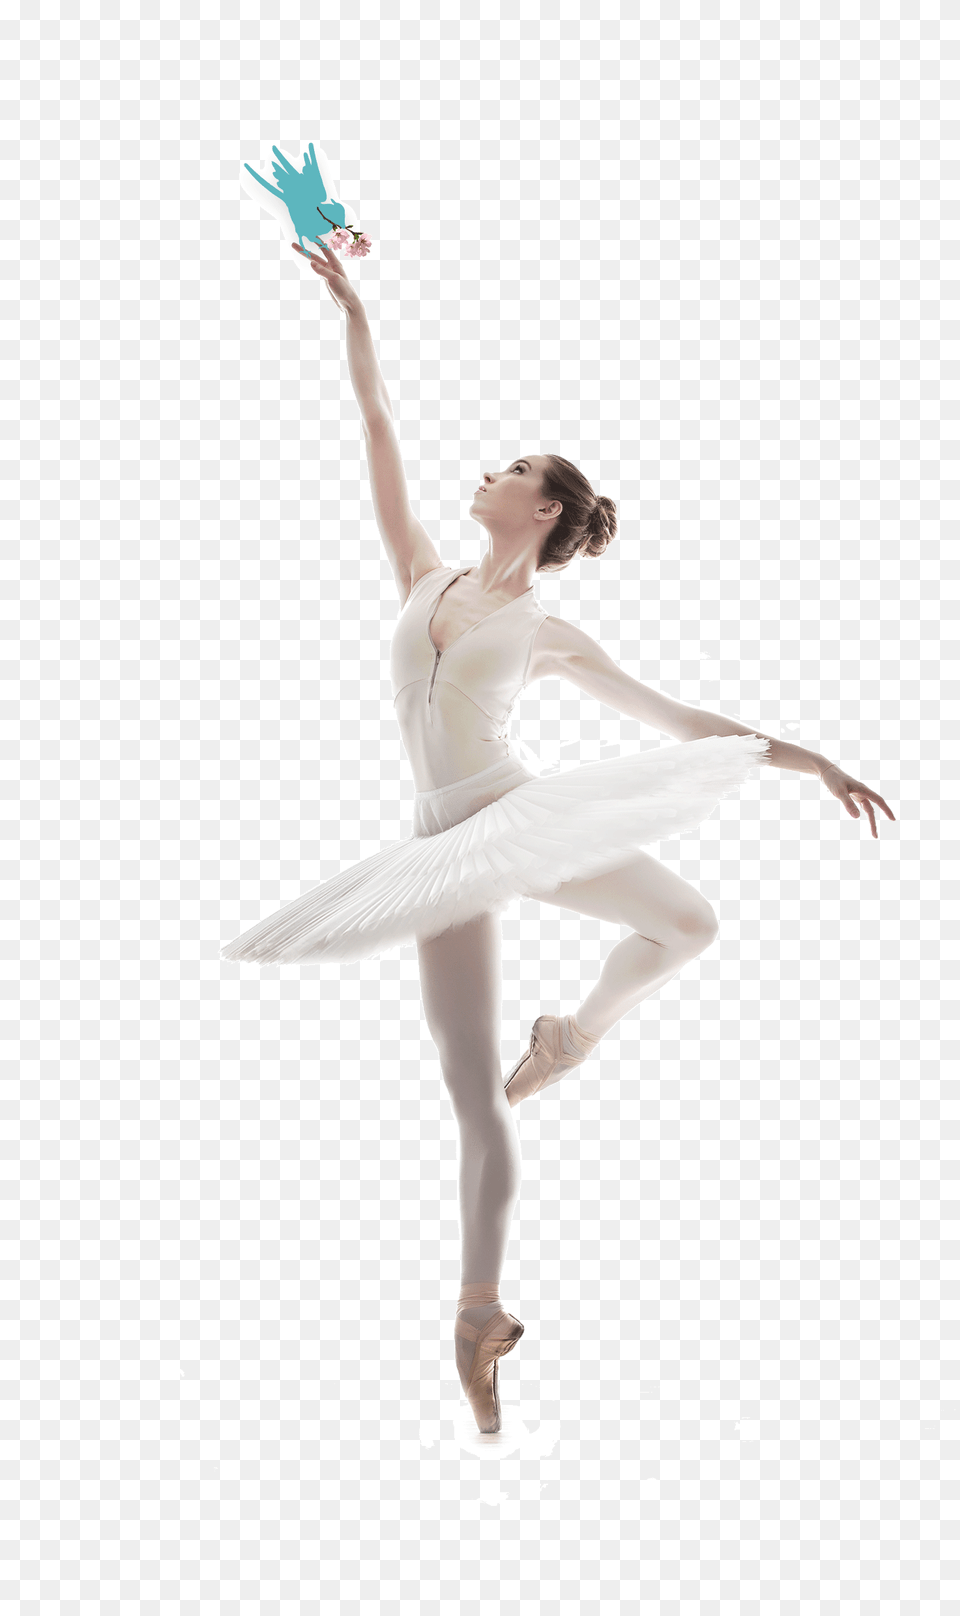 Ballet Dancer, Dancing, Person, Ballerina, Leisure Activities Png Image